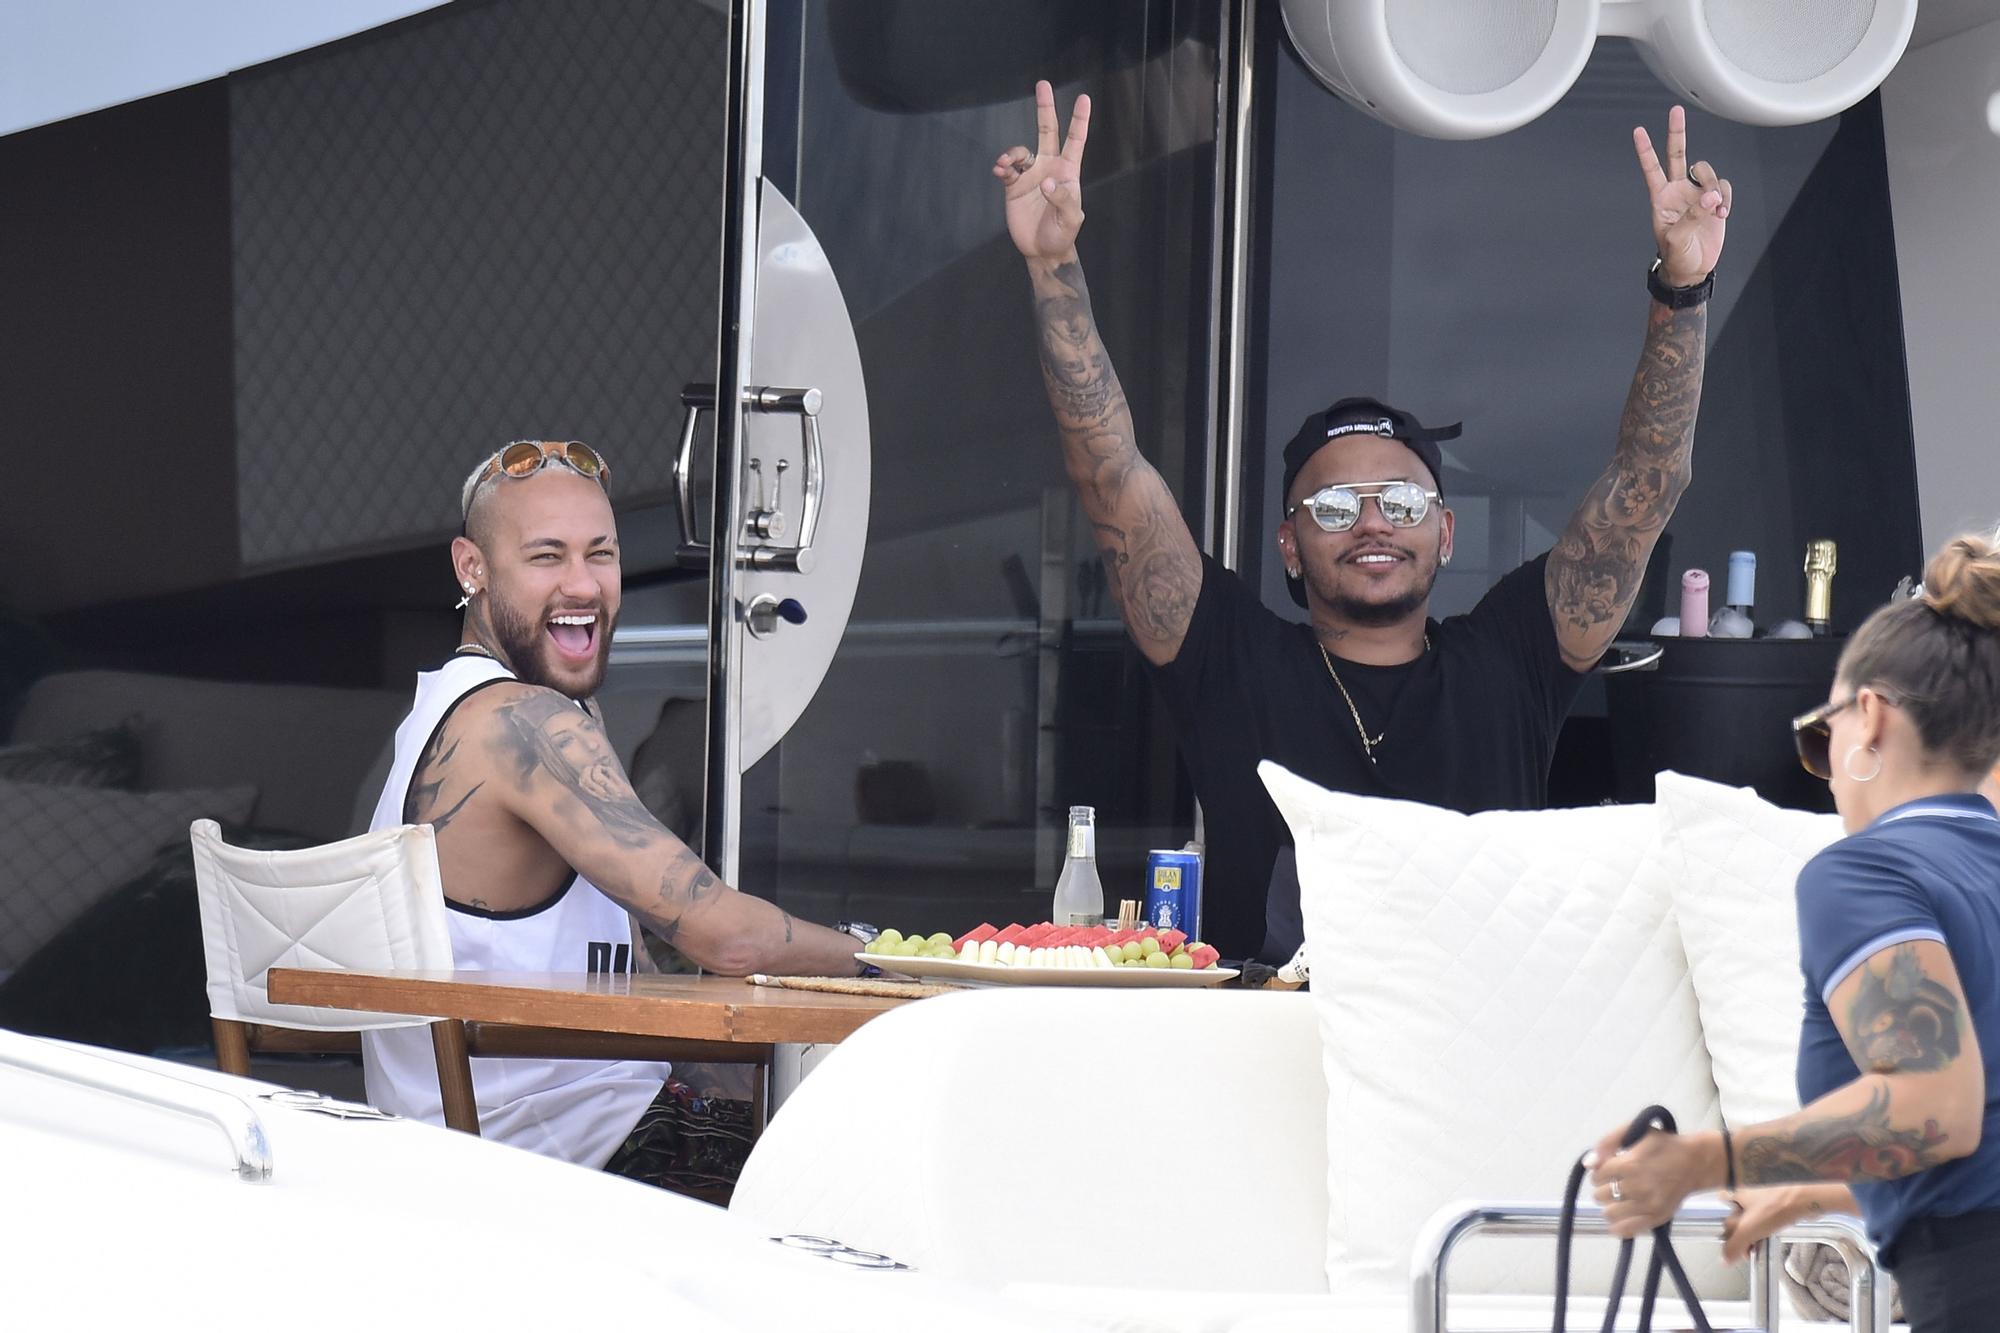 Neymar navega con un grupo de amigos en Ibiza